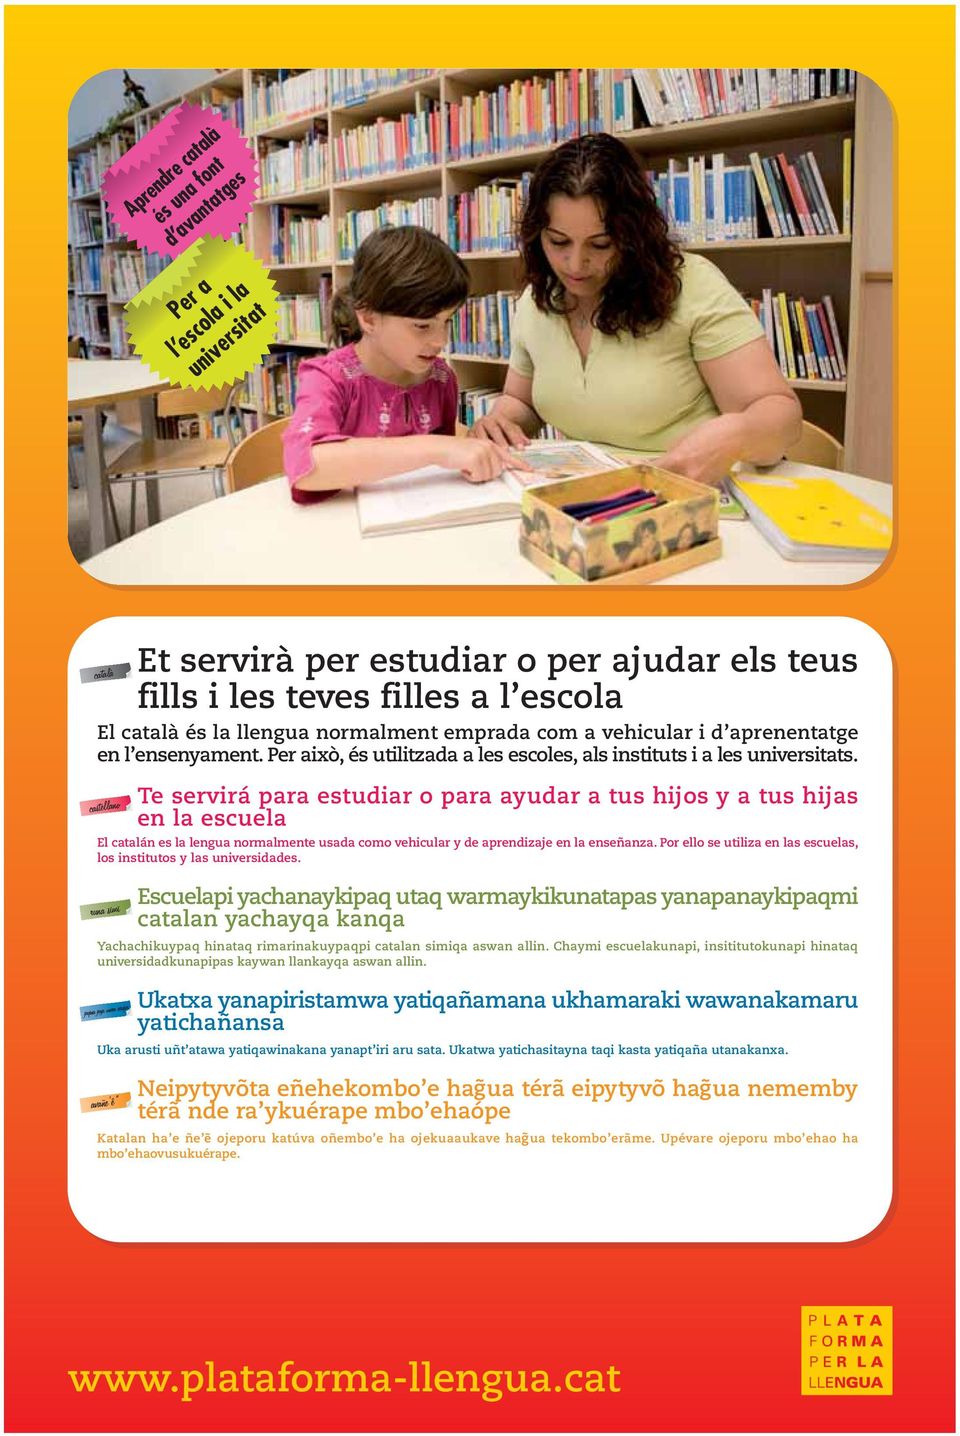 Te servirá para estudiar o para ayudar a tus hijos y a tus hijas en la escuela El catalán es la lengua normalmente usada como vehicular y de aprendizaje en la enseñanza.